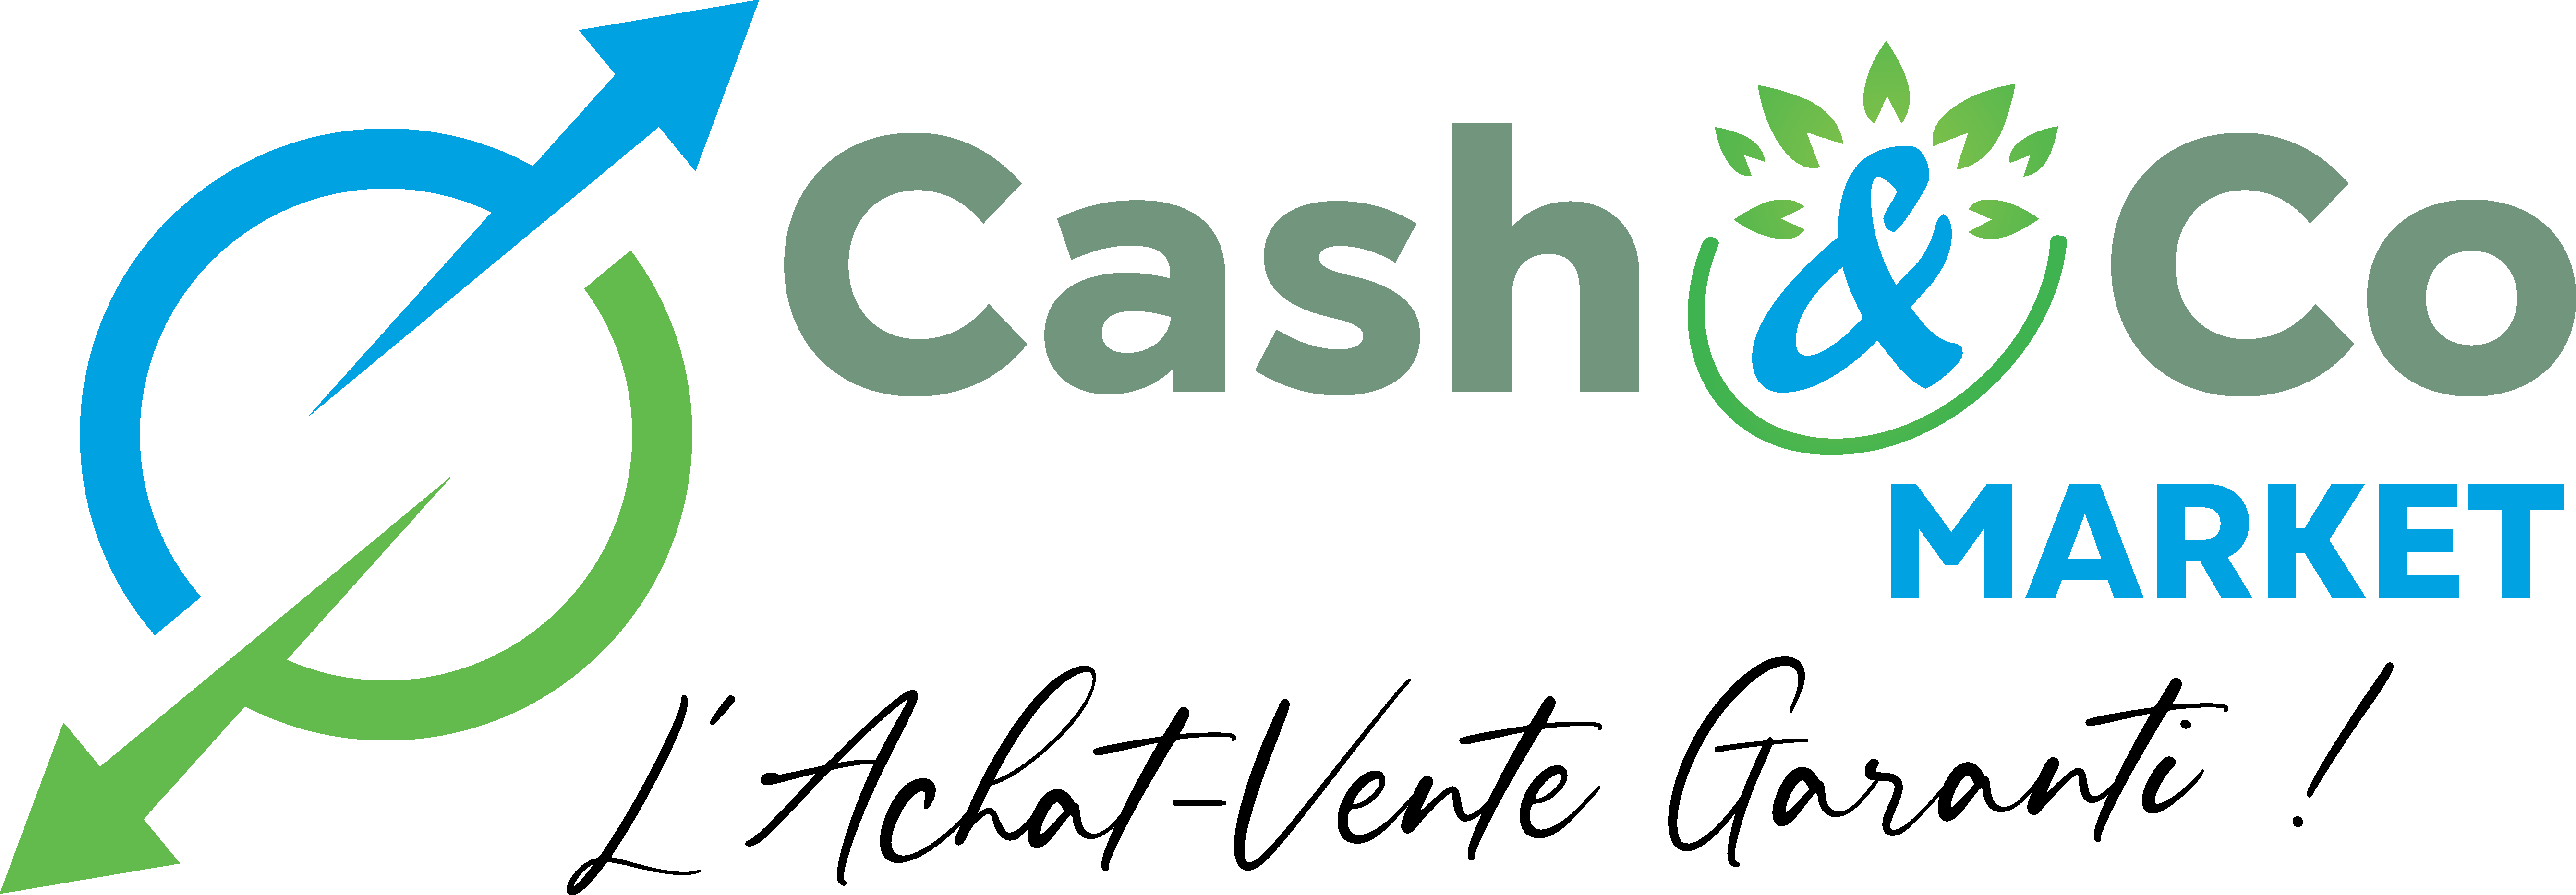 Cash&Co Market